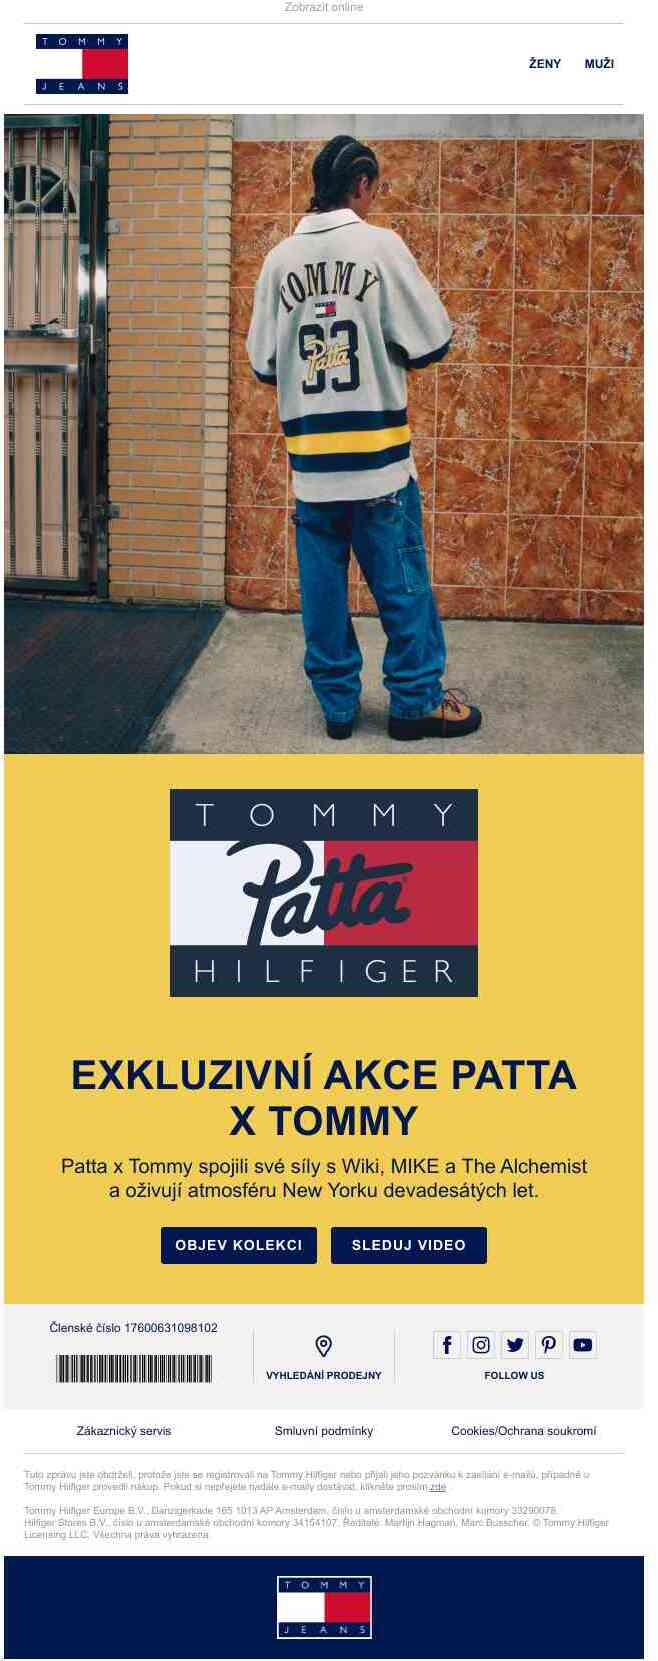 Poslední výzva k Patta x Tommy.